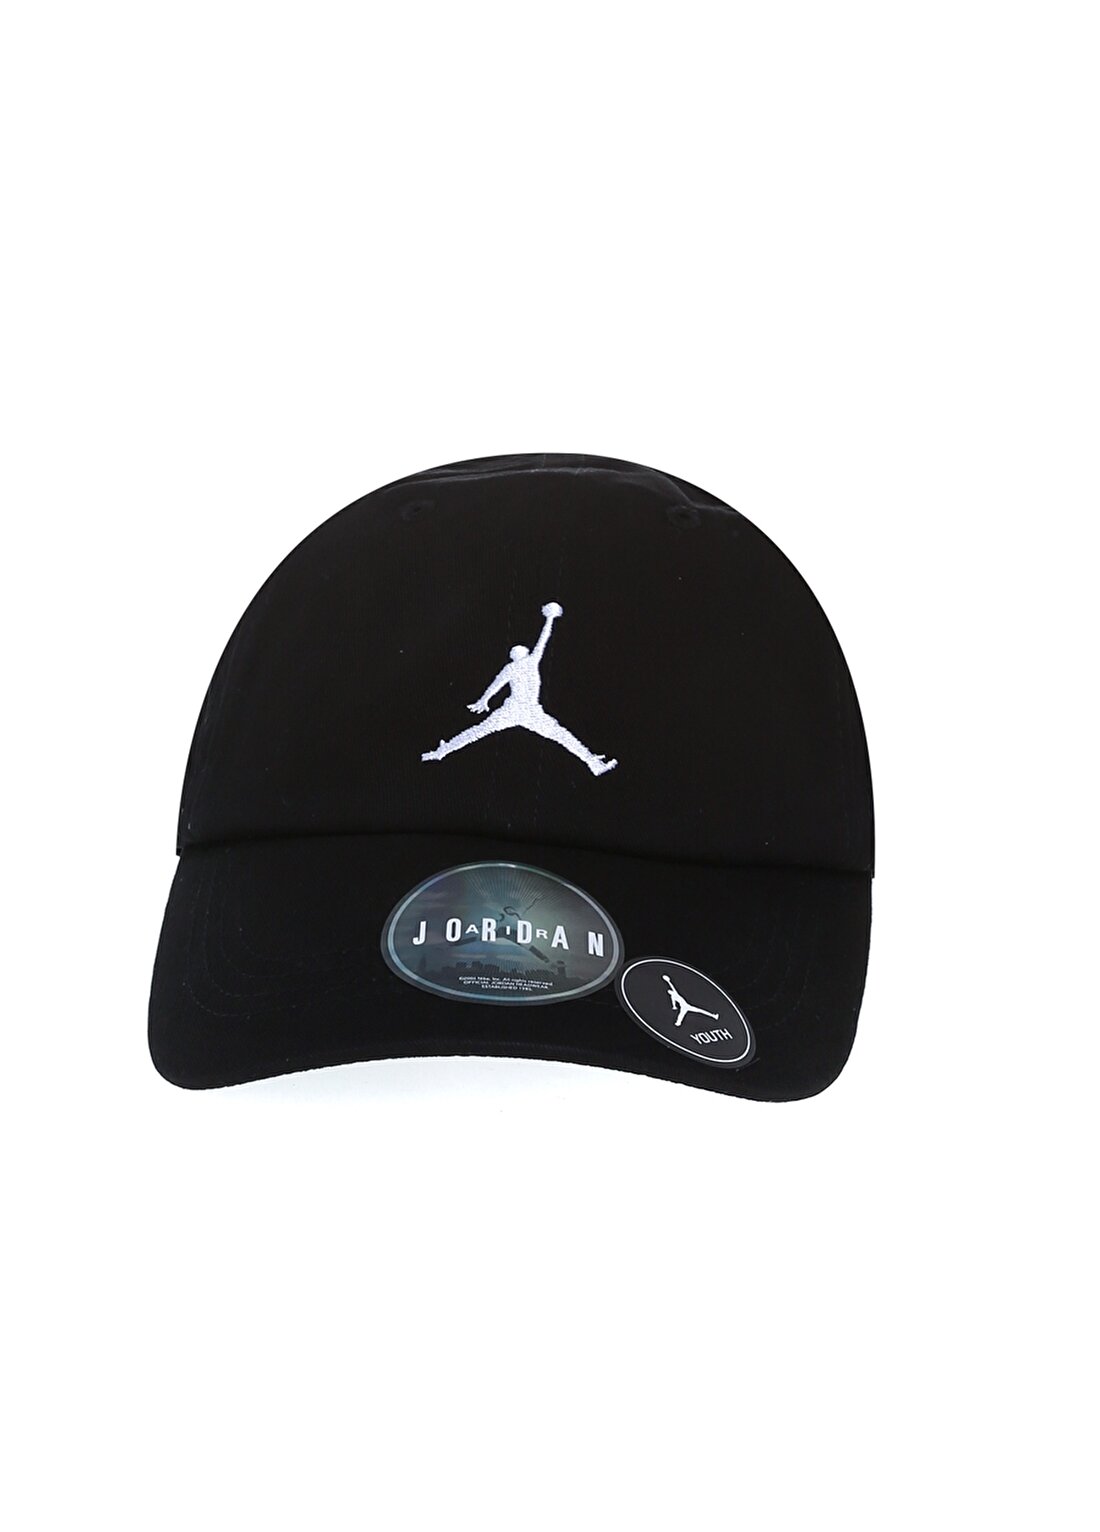 Nike 9A0570-F66 Jan Curvebrim Adjustable Normal Kalıp Düz Siyah - Beyaz Erkekçocuk Şapka